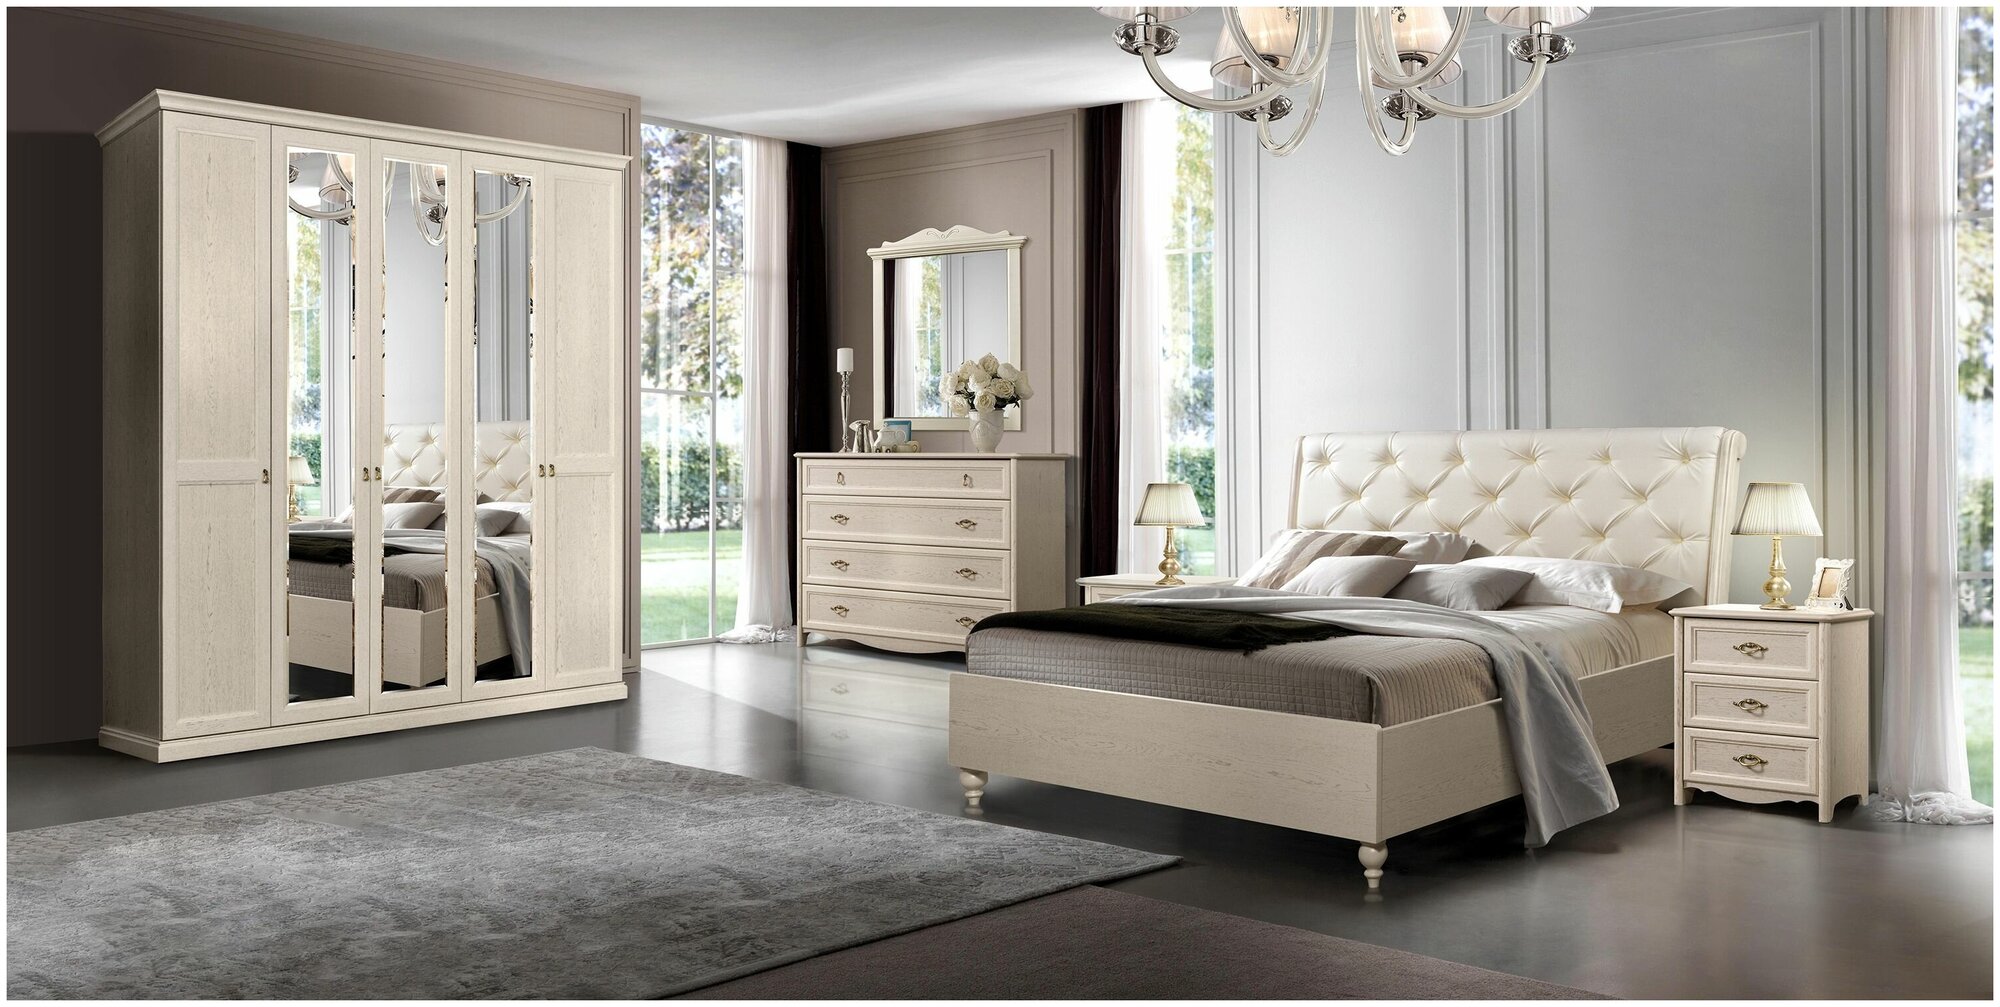 Спальня Венеция полный комплект мебели. Дуб седан.